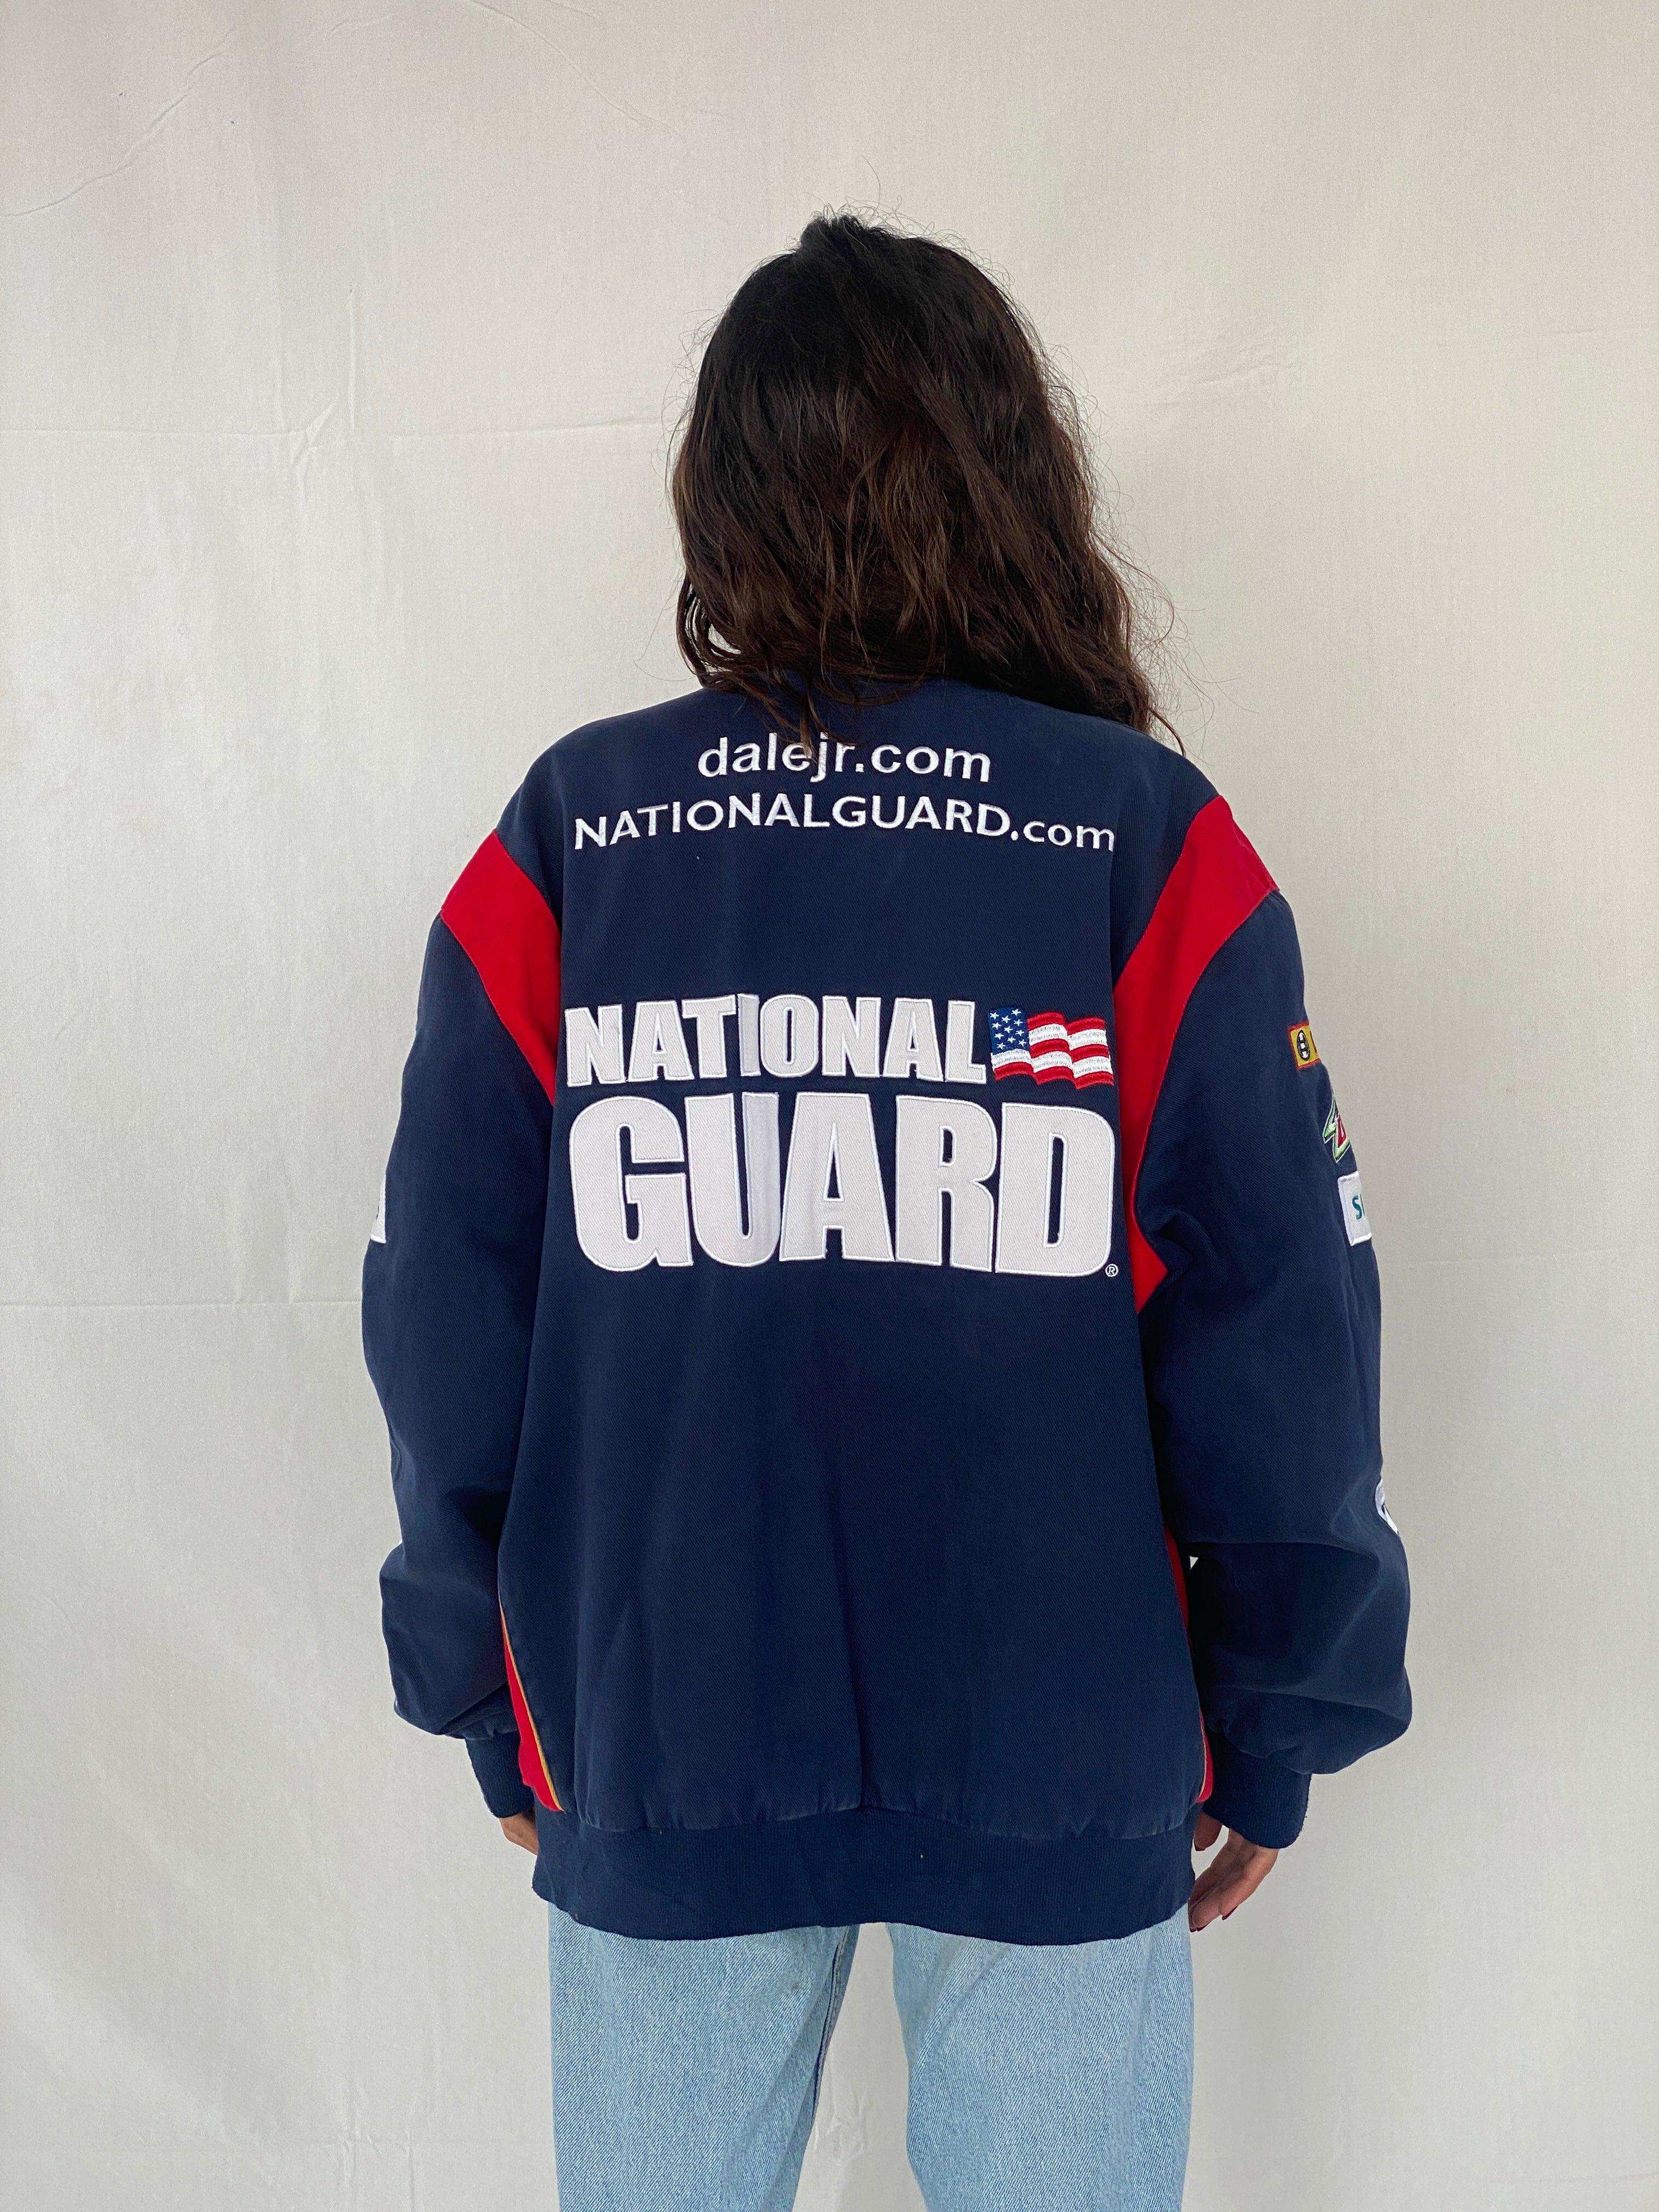 NASCAR National Guard Racing Jacket - Balagan Vintage Racing Jacket heavy jacket, jacket, NEW IN, racing jacket, Tojan